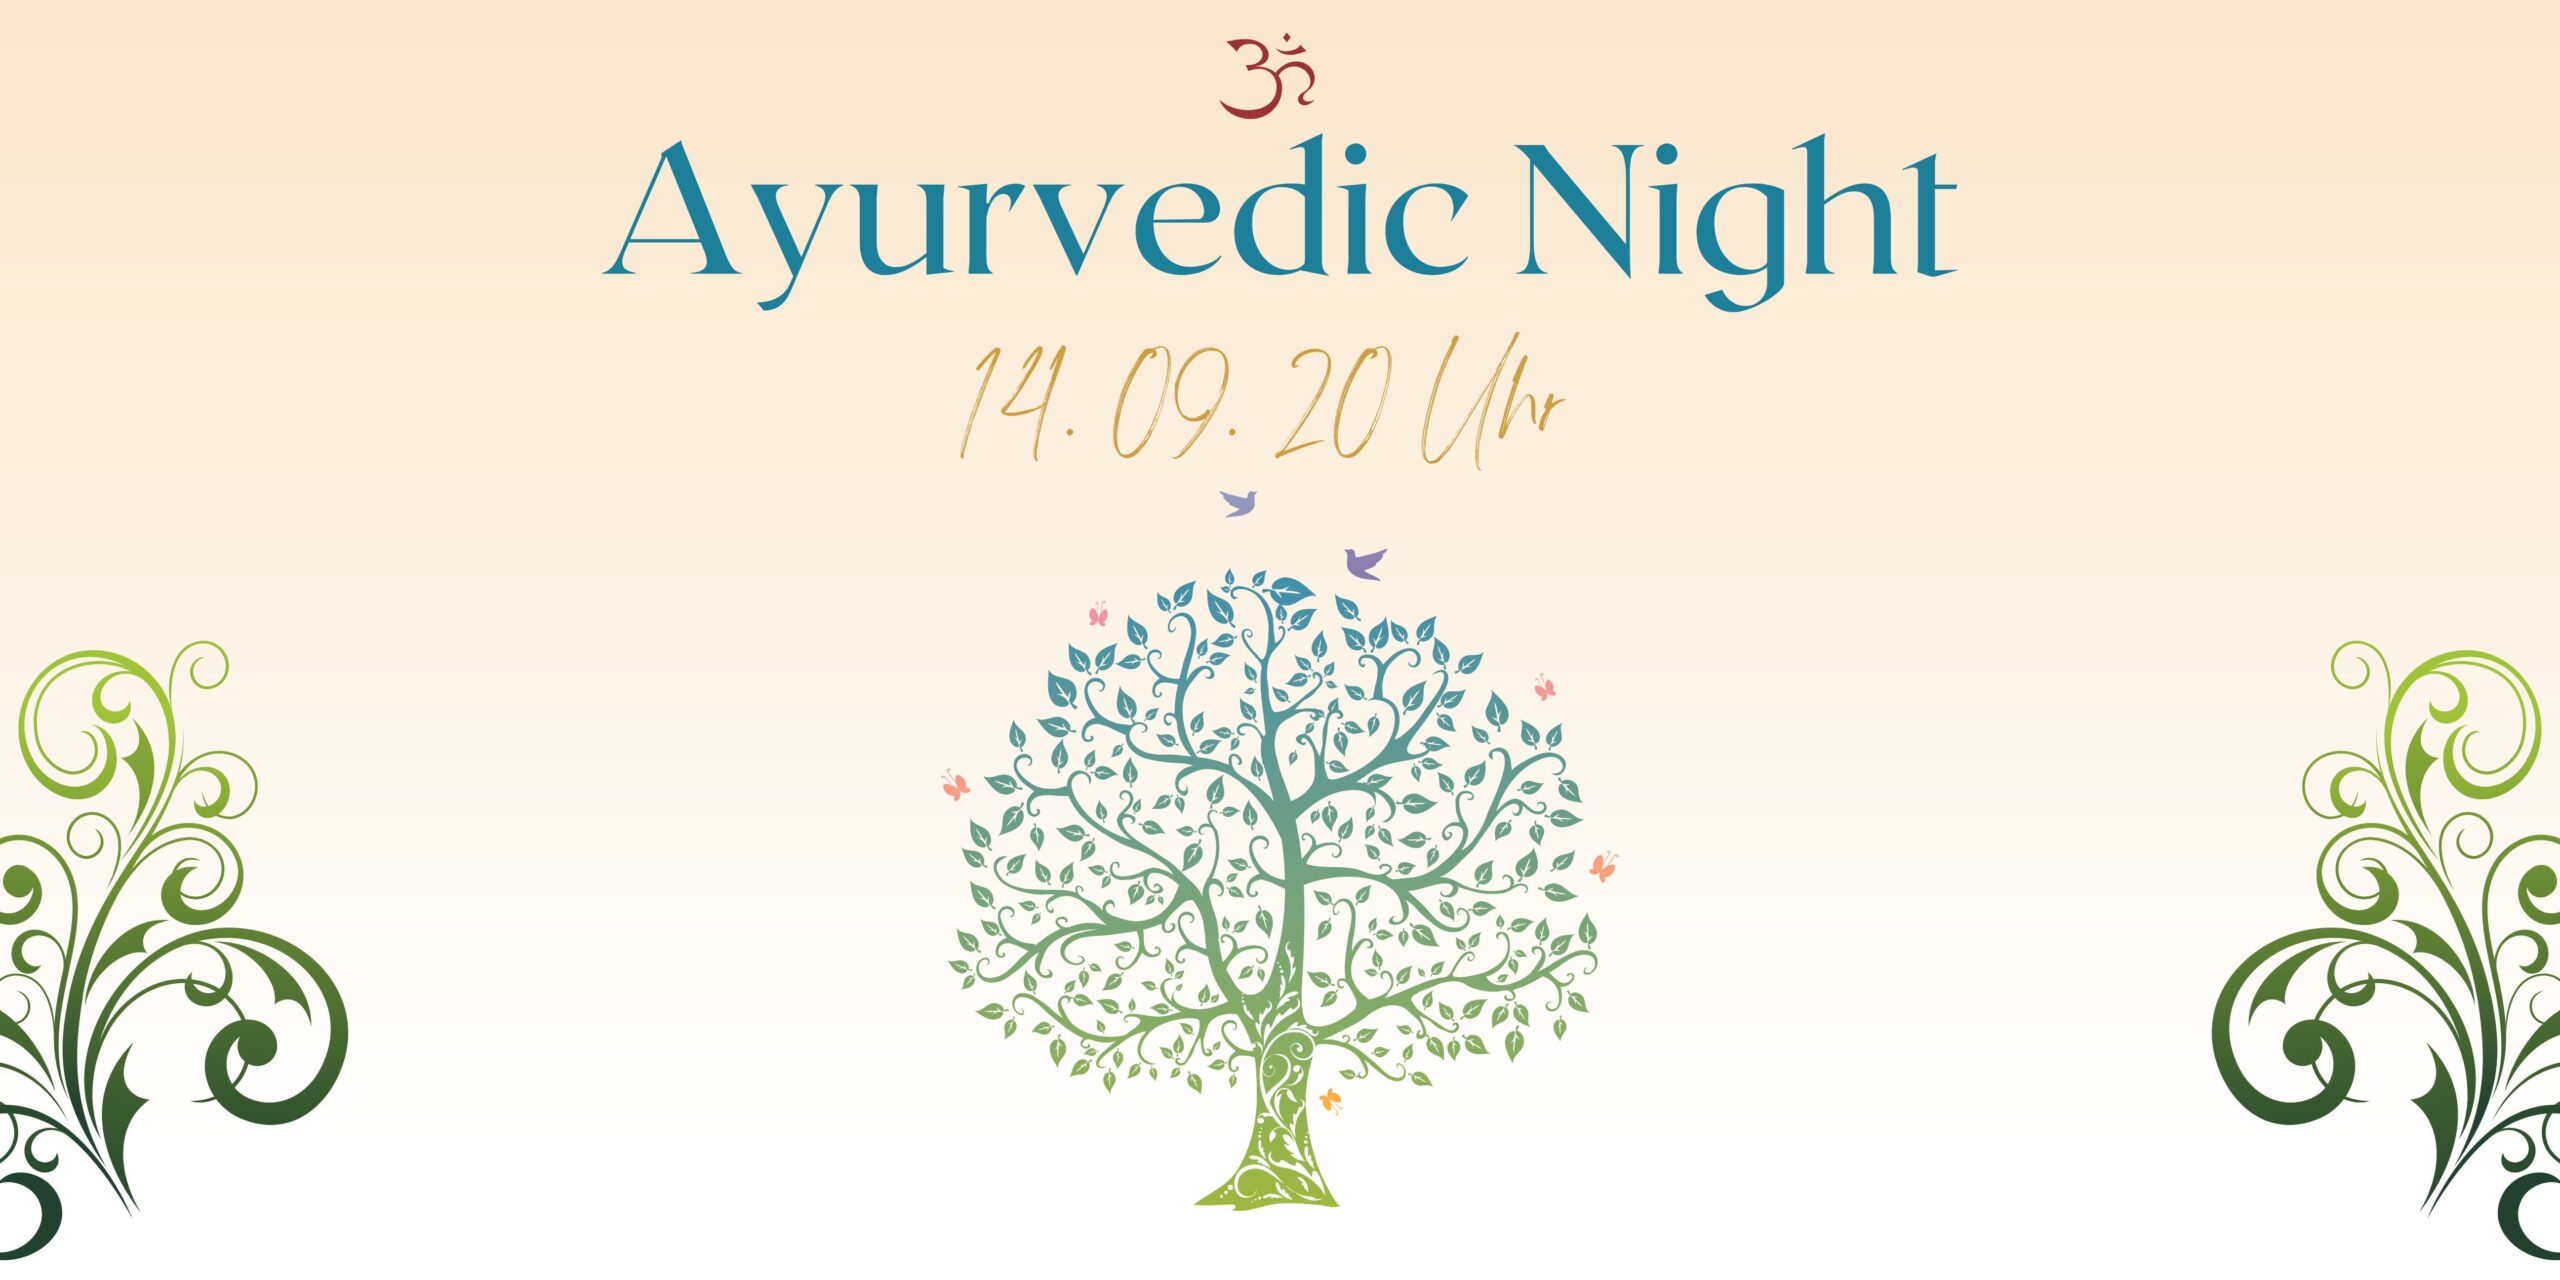 Ayurvedic Night